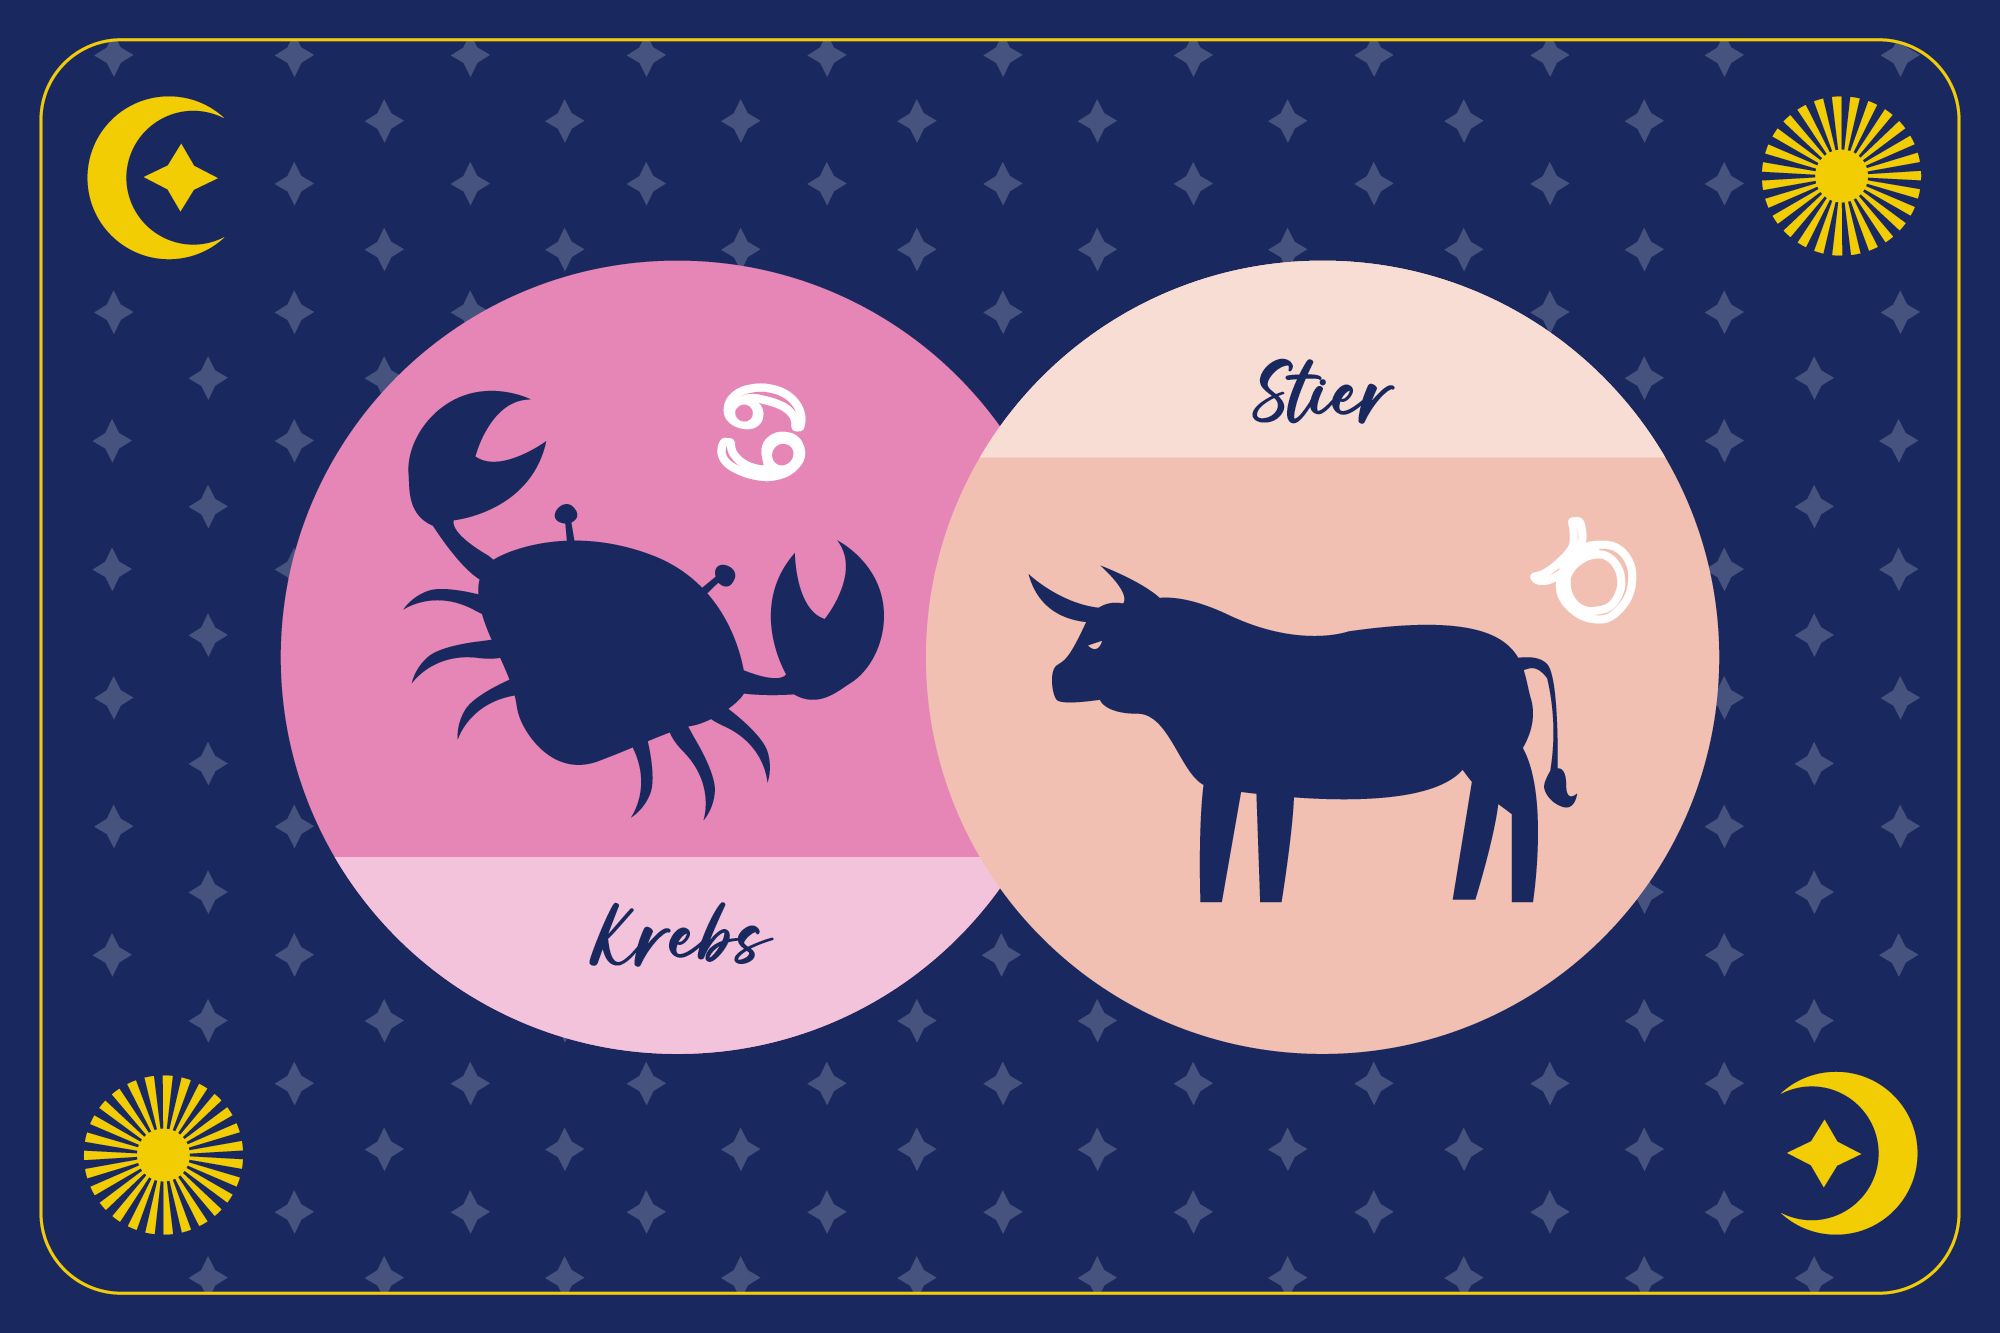 Sternzeichen Stier in pfirsichfarbenem Kreis und Sternzeichen Krebs in pinkem Kreis auf dunkelblauem Hintergrund mit Mond, Sonne und Sternen